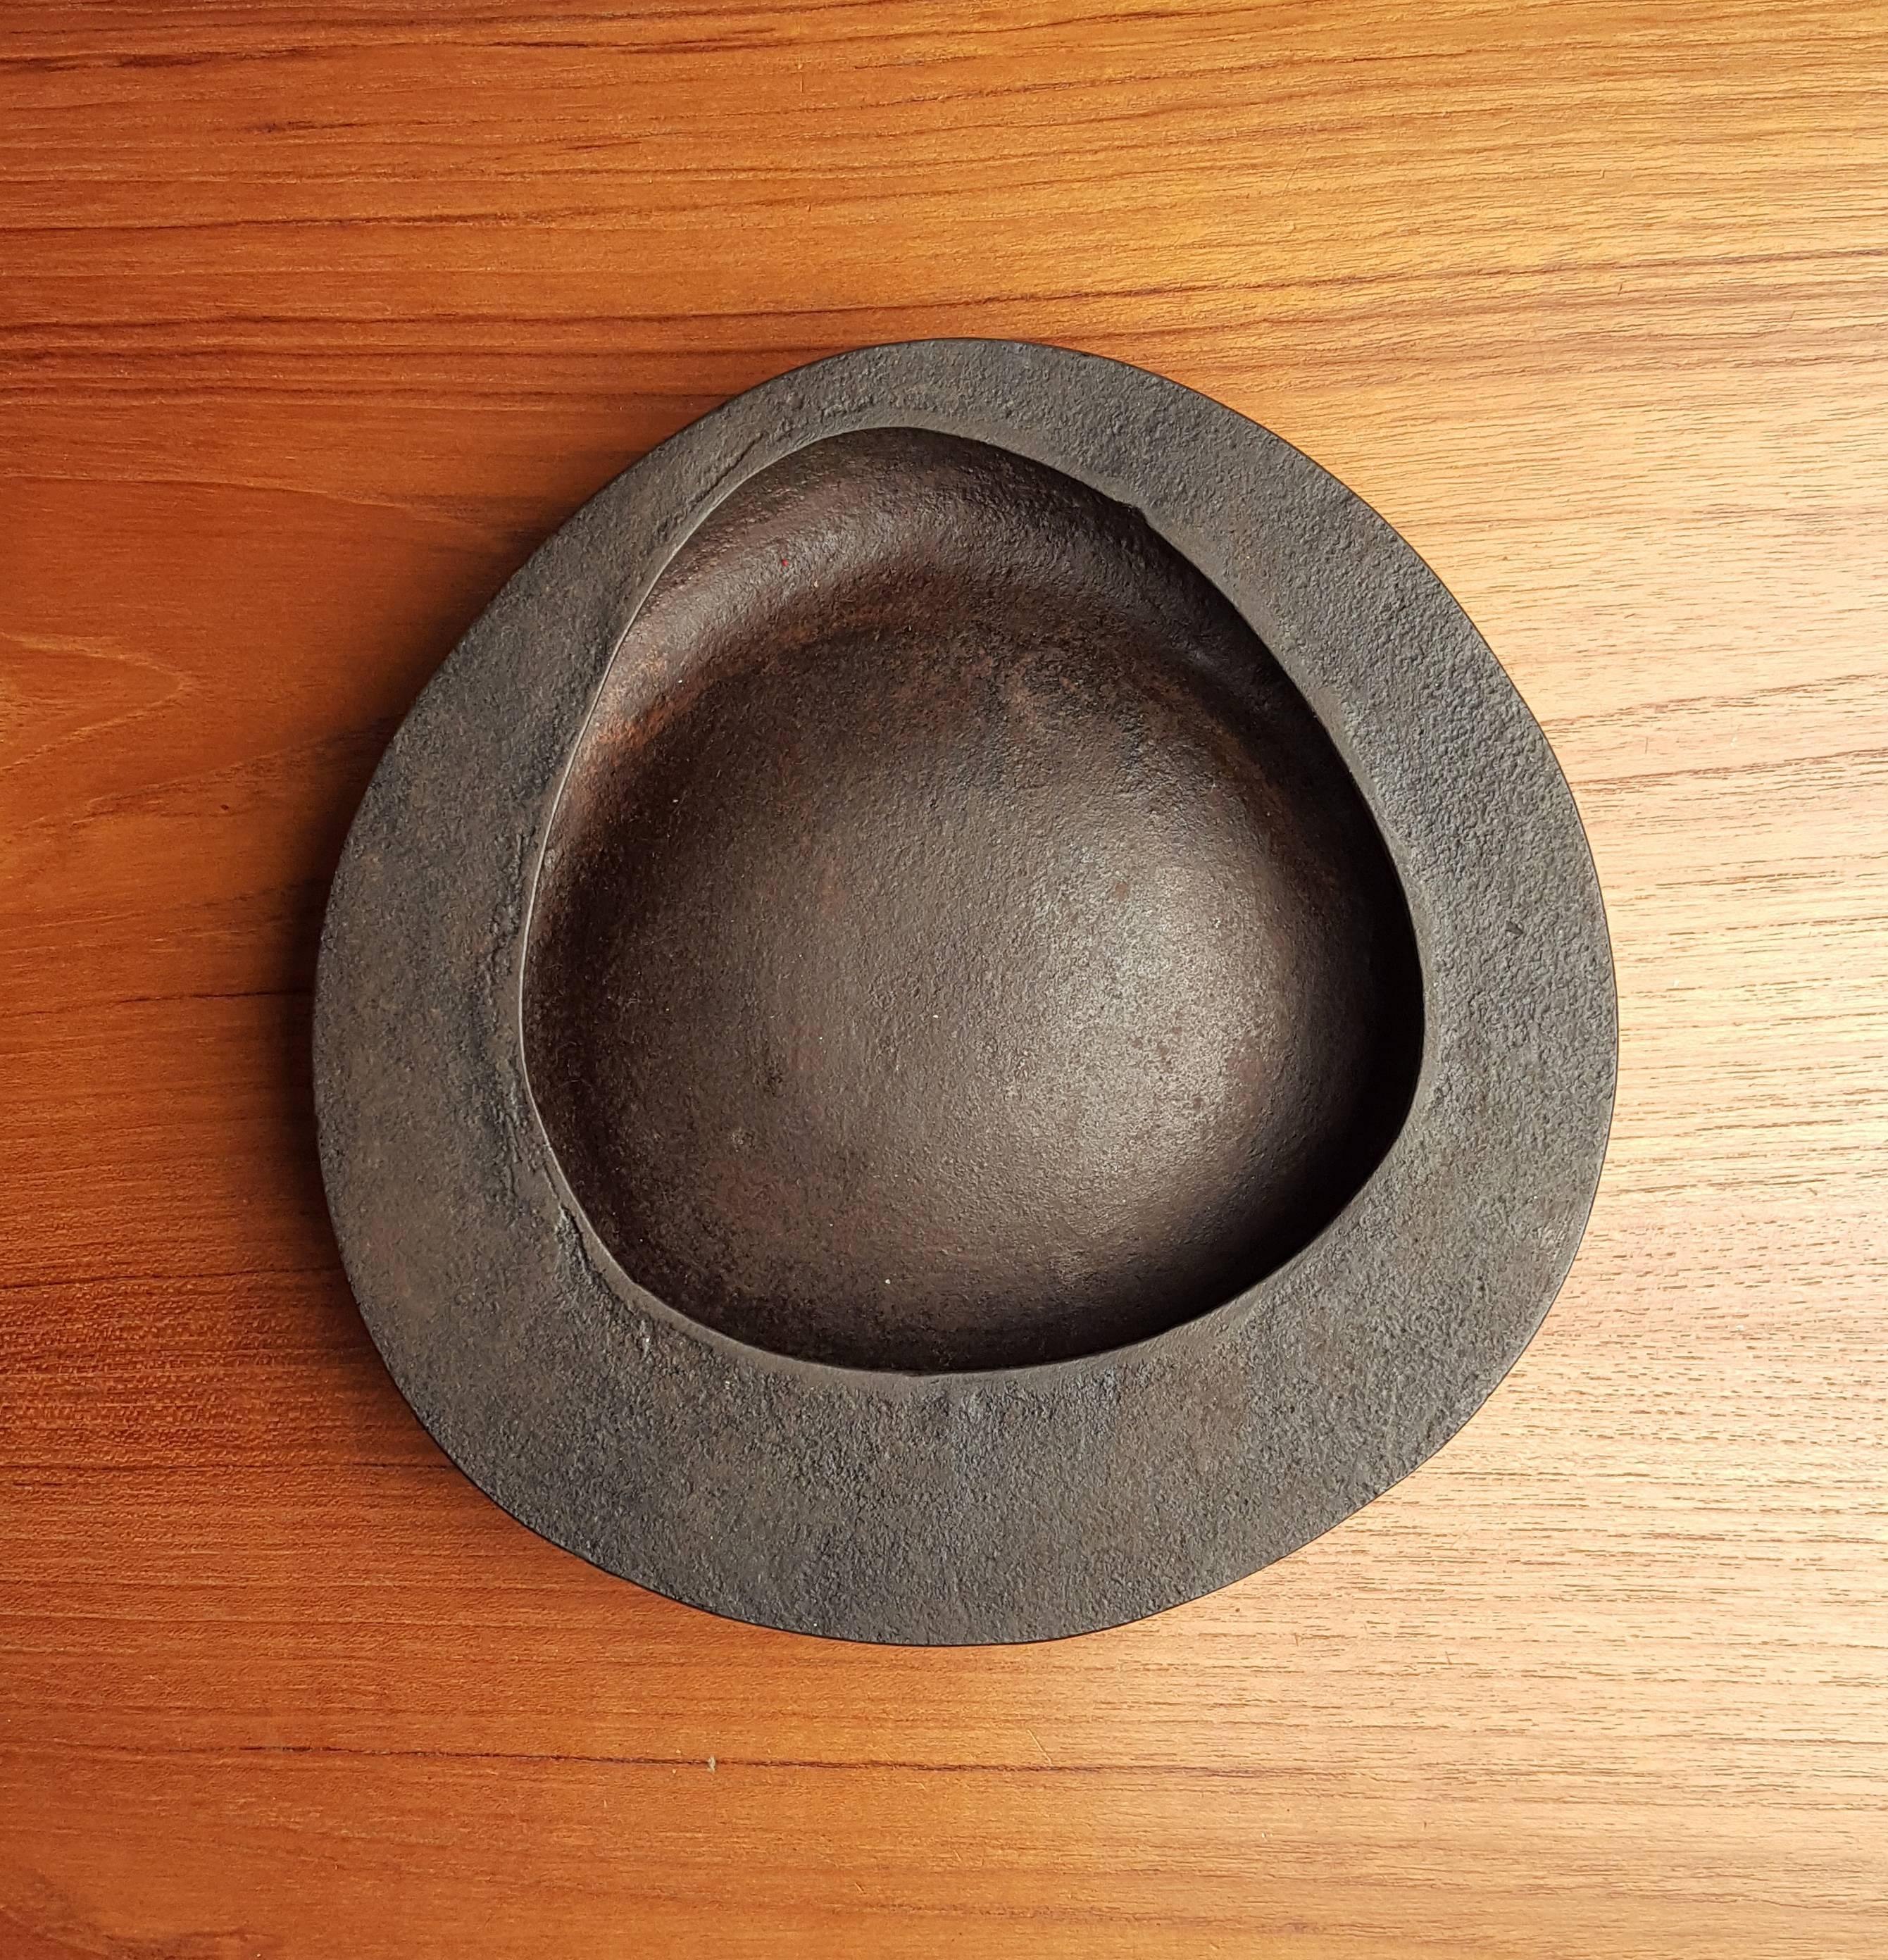 Raro cuenco grande de hierro fundido atribuido a Isamu Noguchi para Bonniers Japón. Se trata del ejemplo más grande de esta forma producido en la década de 1950 en la fundición Ooi Kojo de Japón para los Grandes Almacenes Bonniers de Nueva York. Se